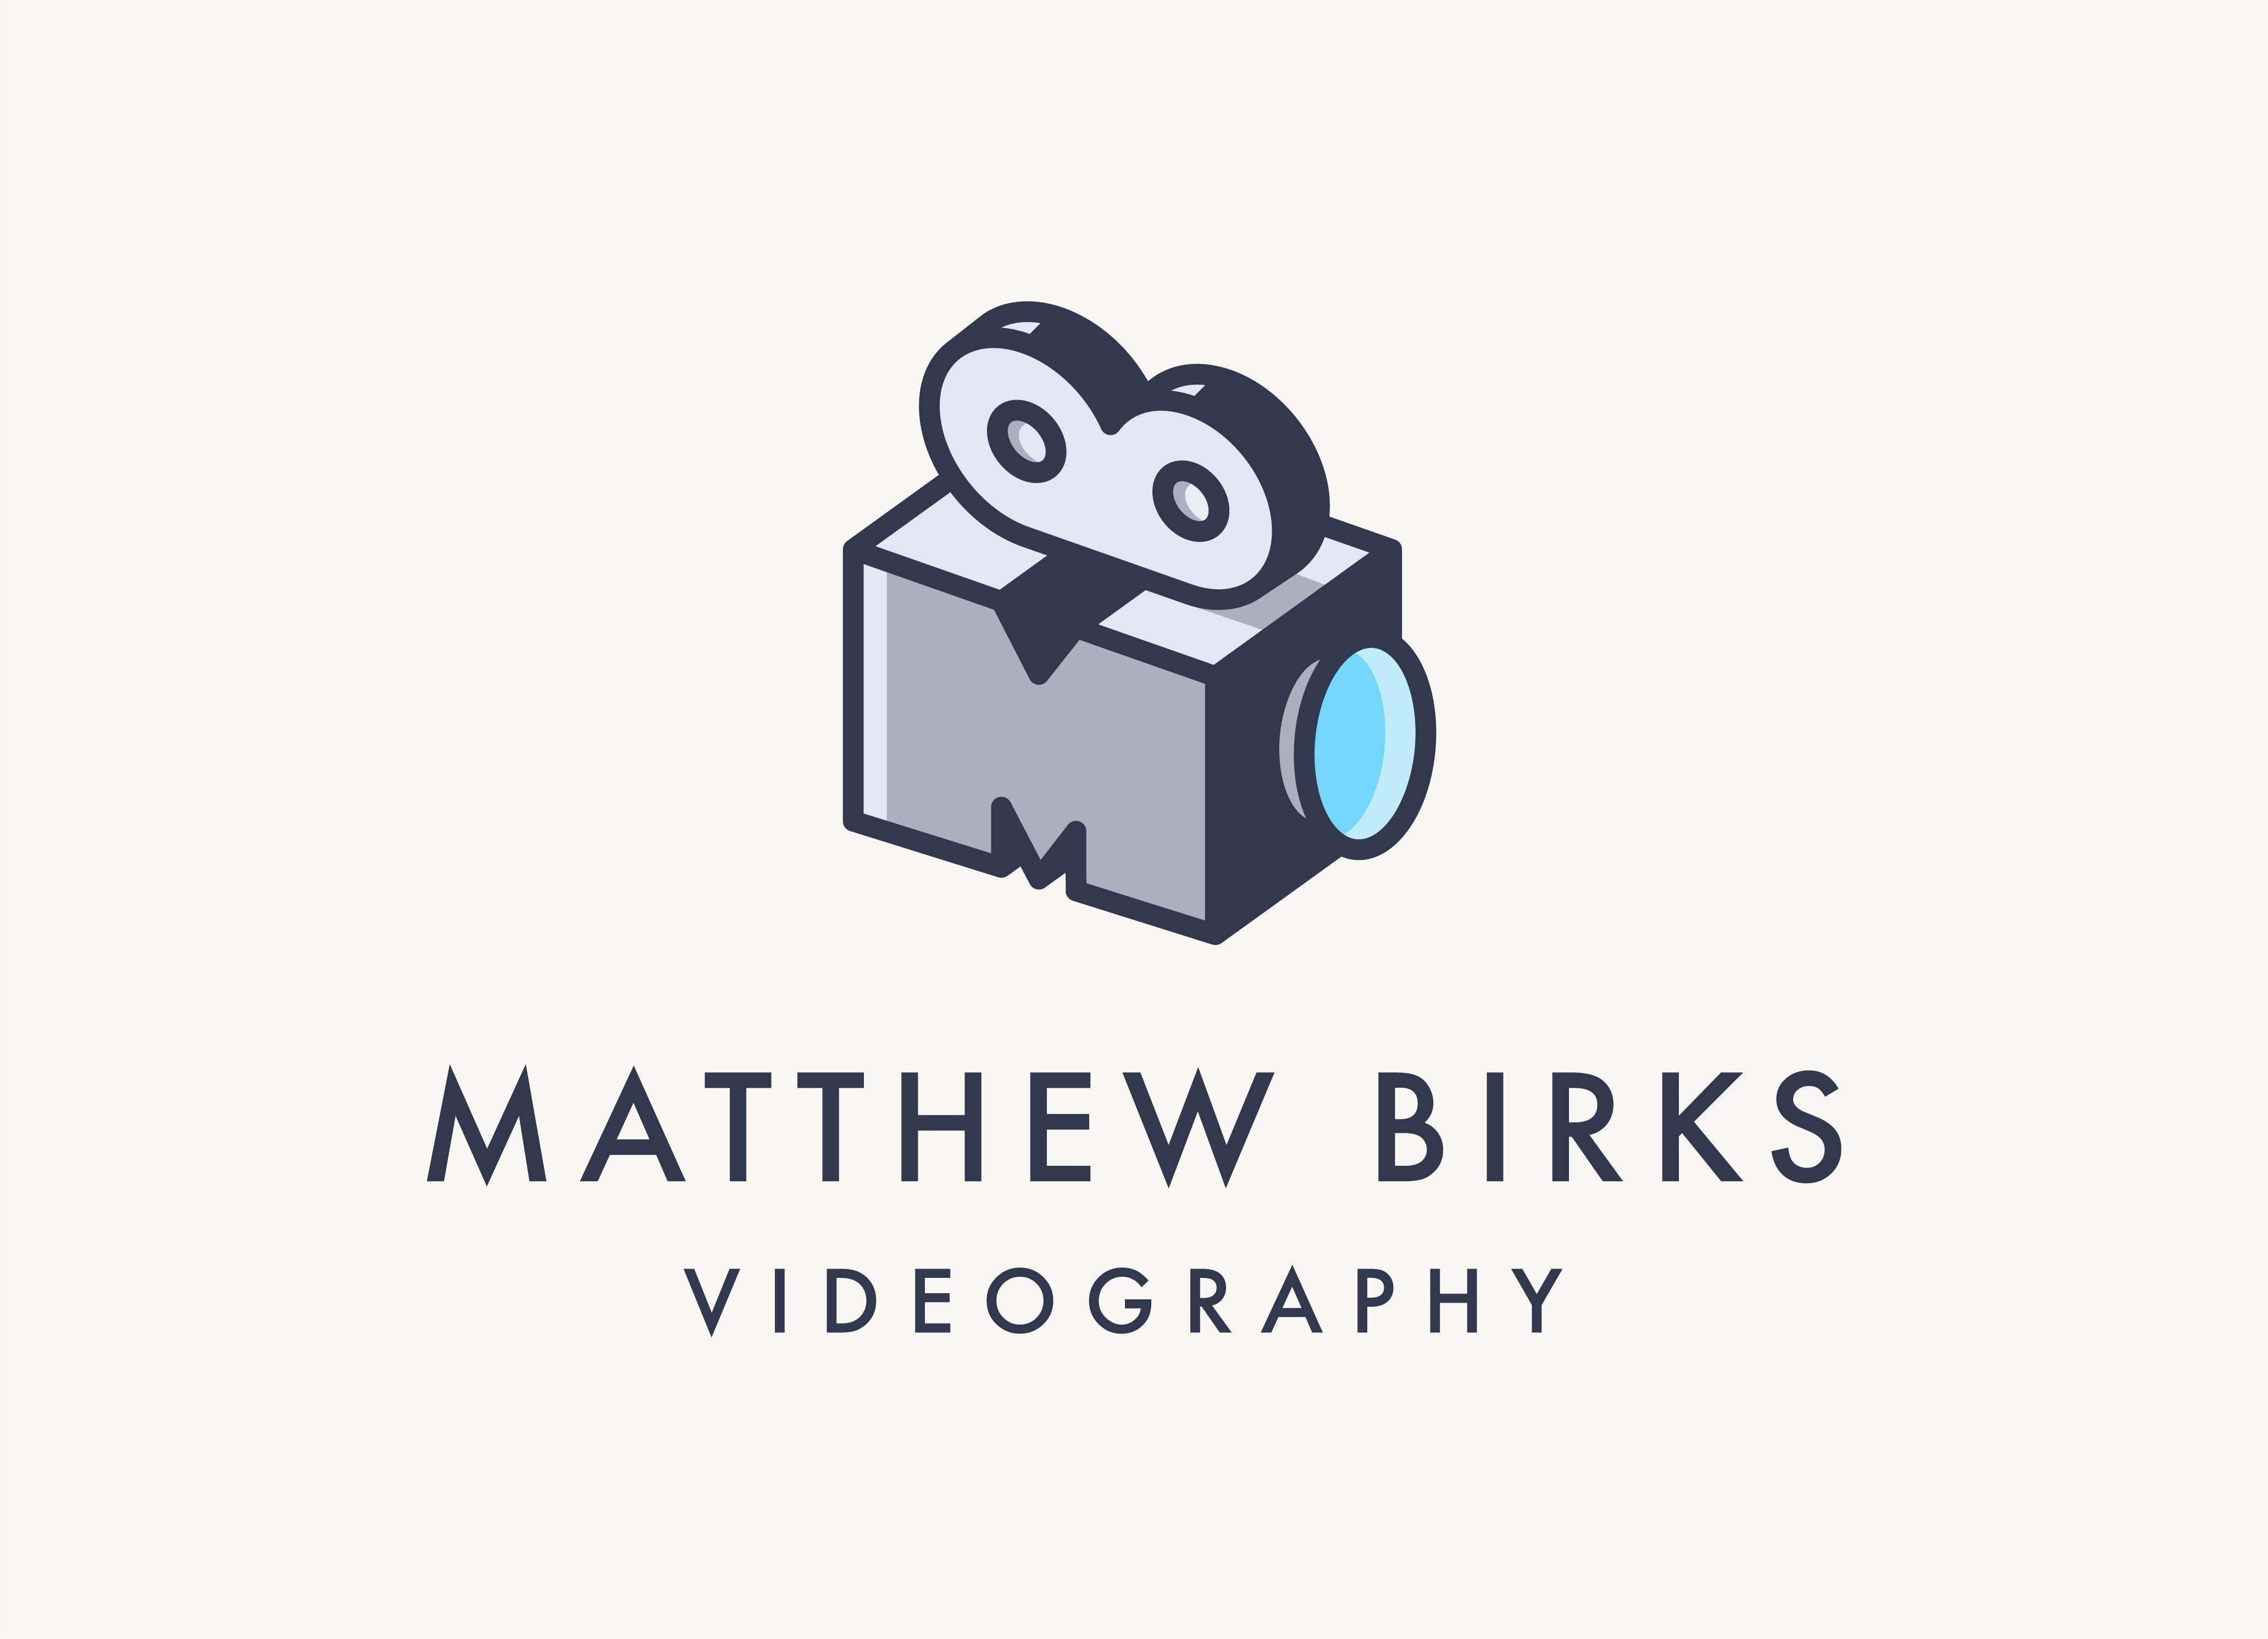 Videography Logo - Logo for a videographer! Can you spot the hidden MB? : logodesign